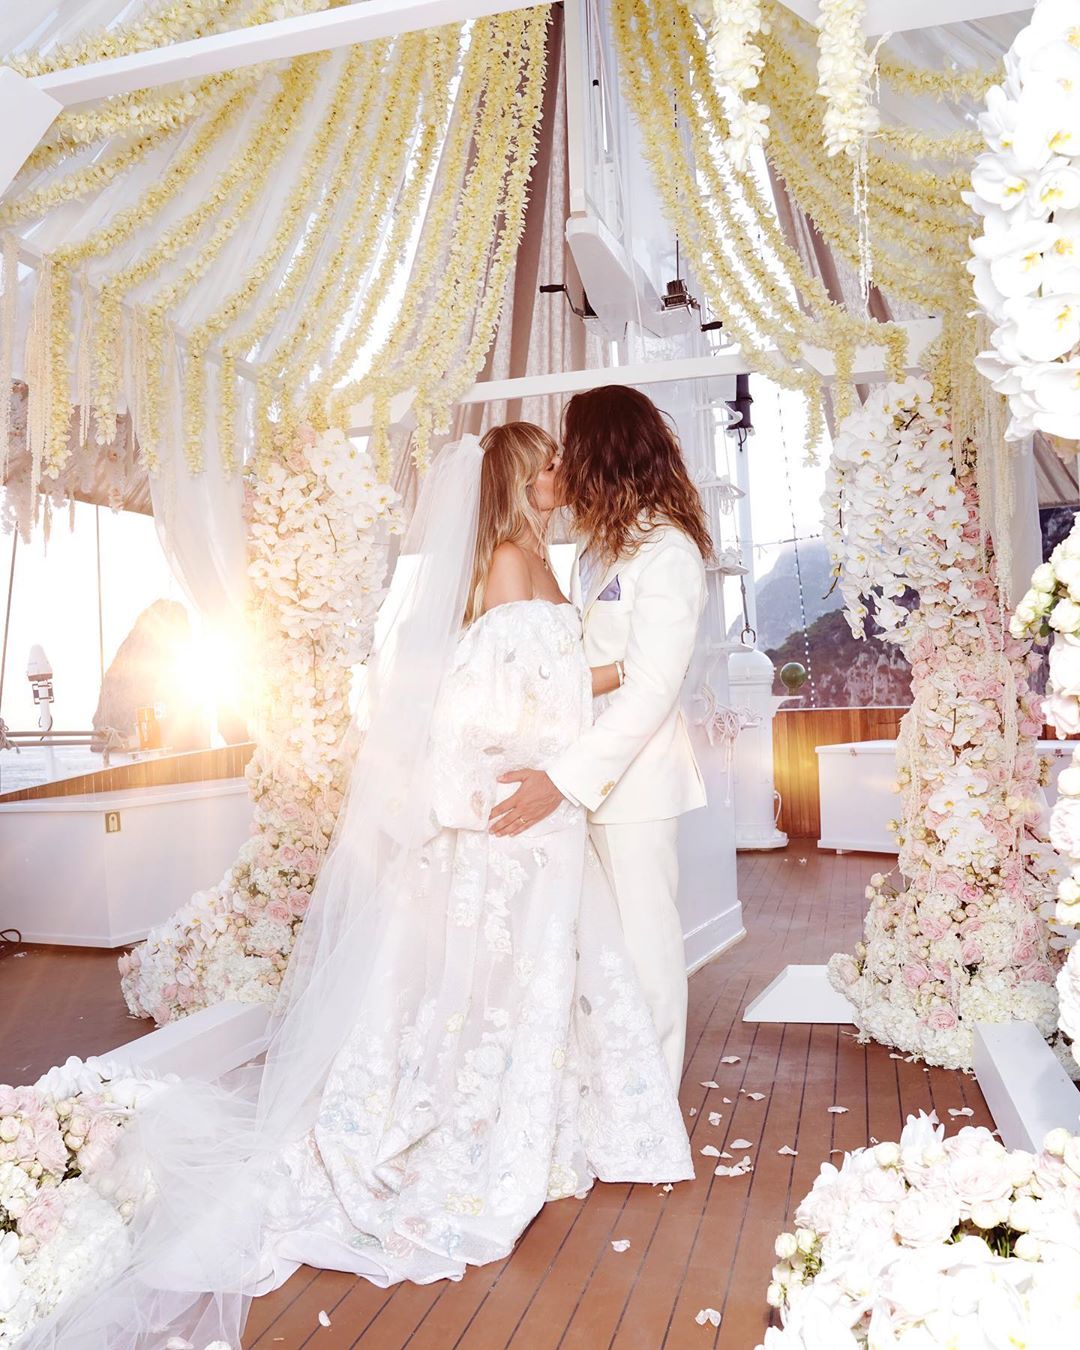 Casamento de Heidi Klum e Tom Kaulitz | Foto via IG @heidiklum